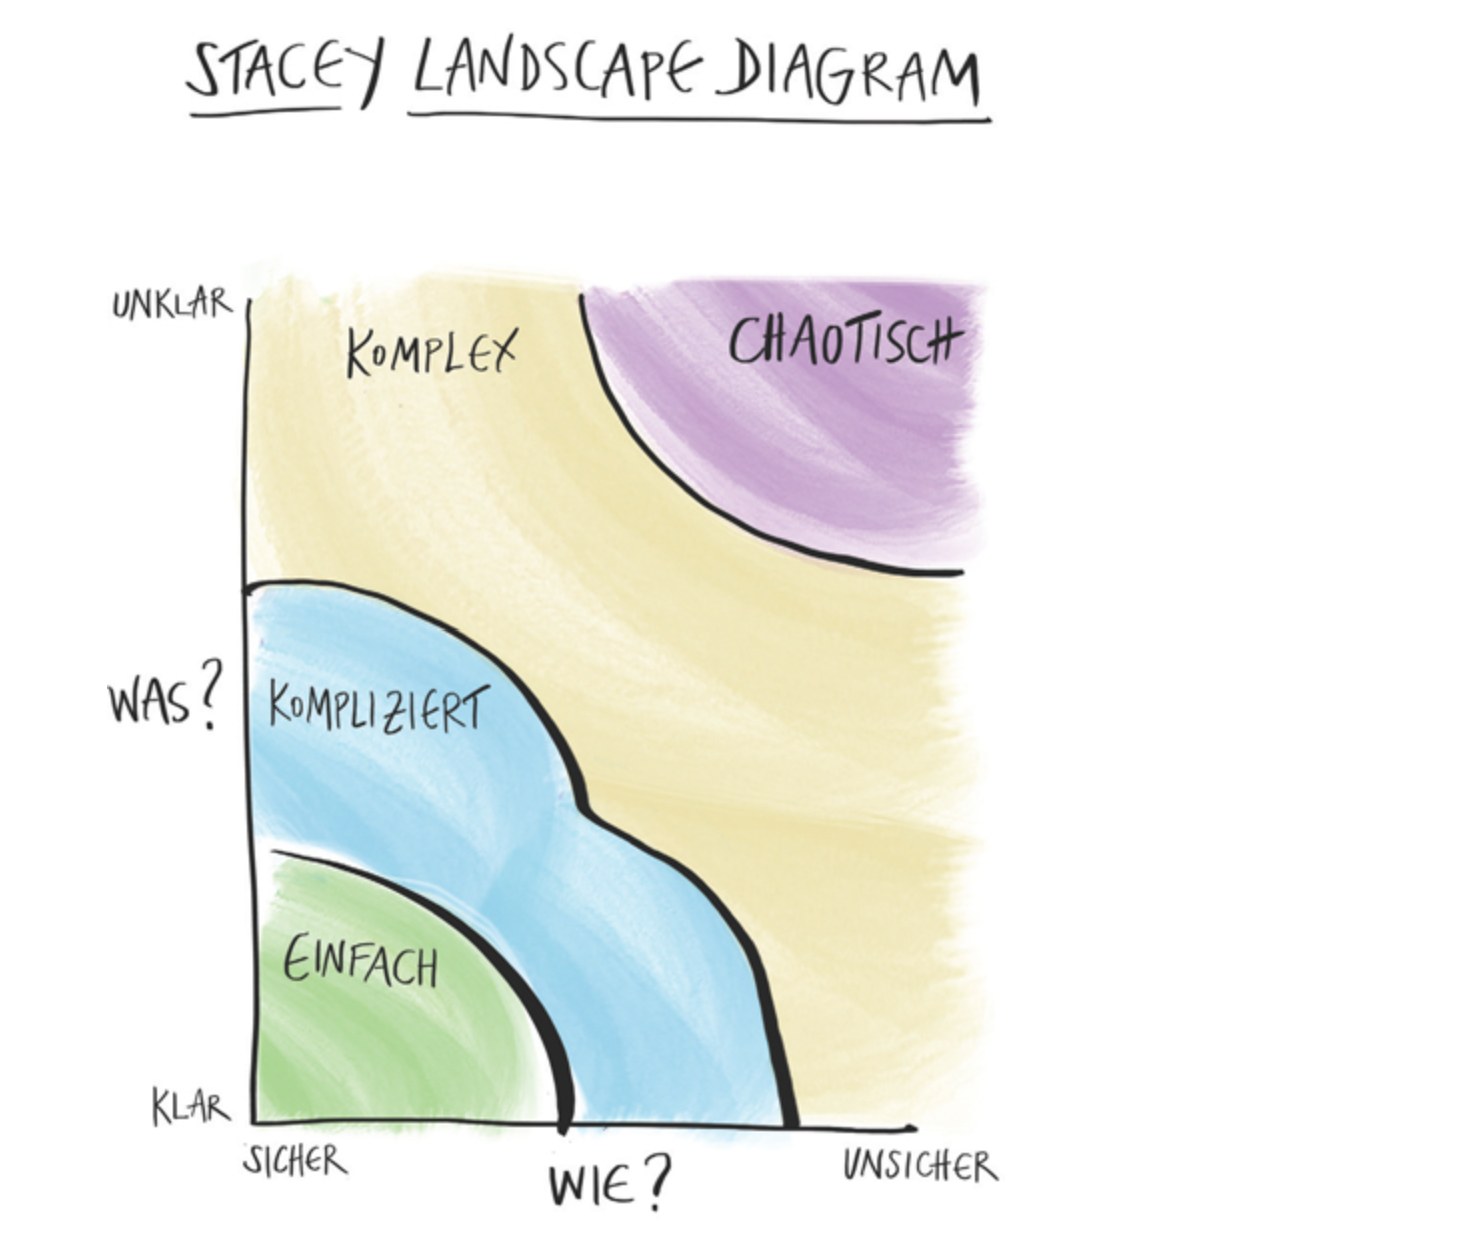 Stacy Landscape Diagram